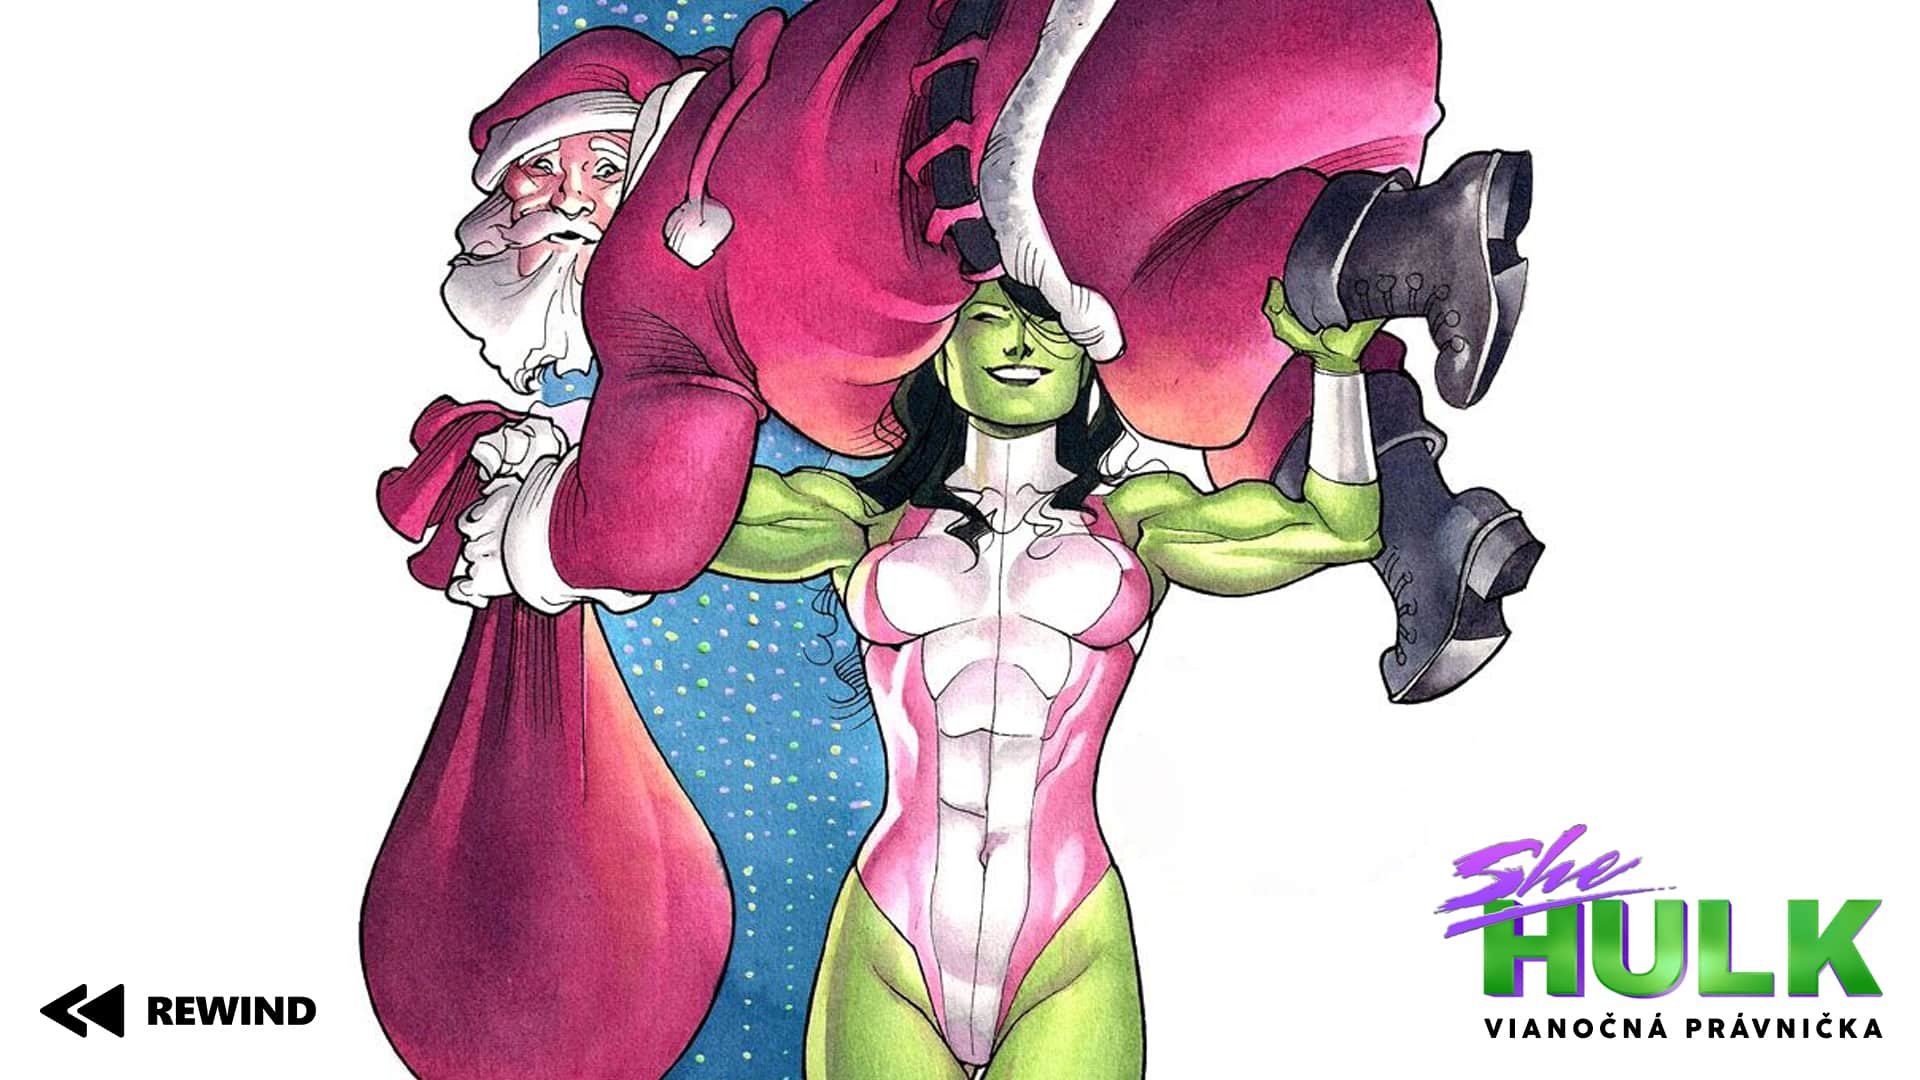 She-Hulk: Vianočná právnička